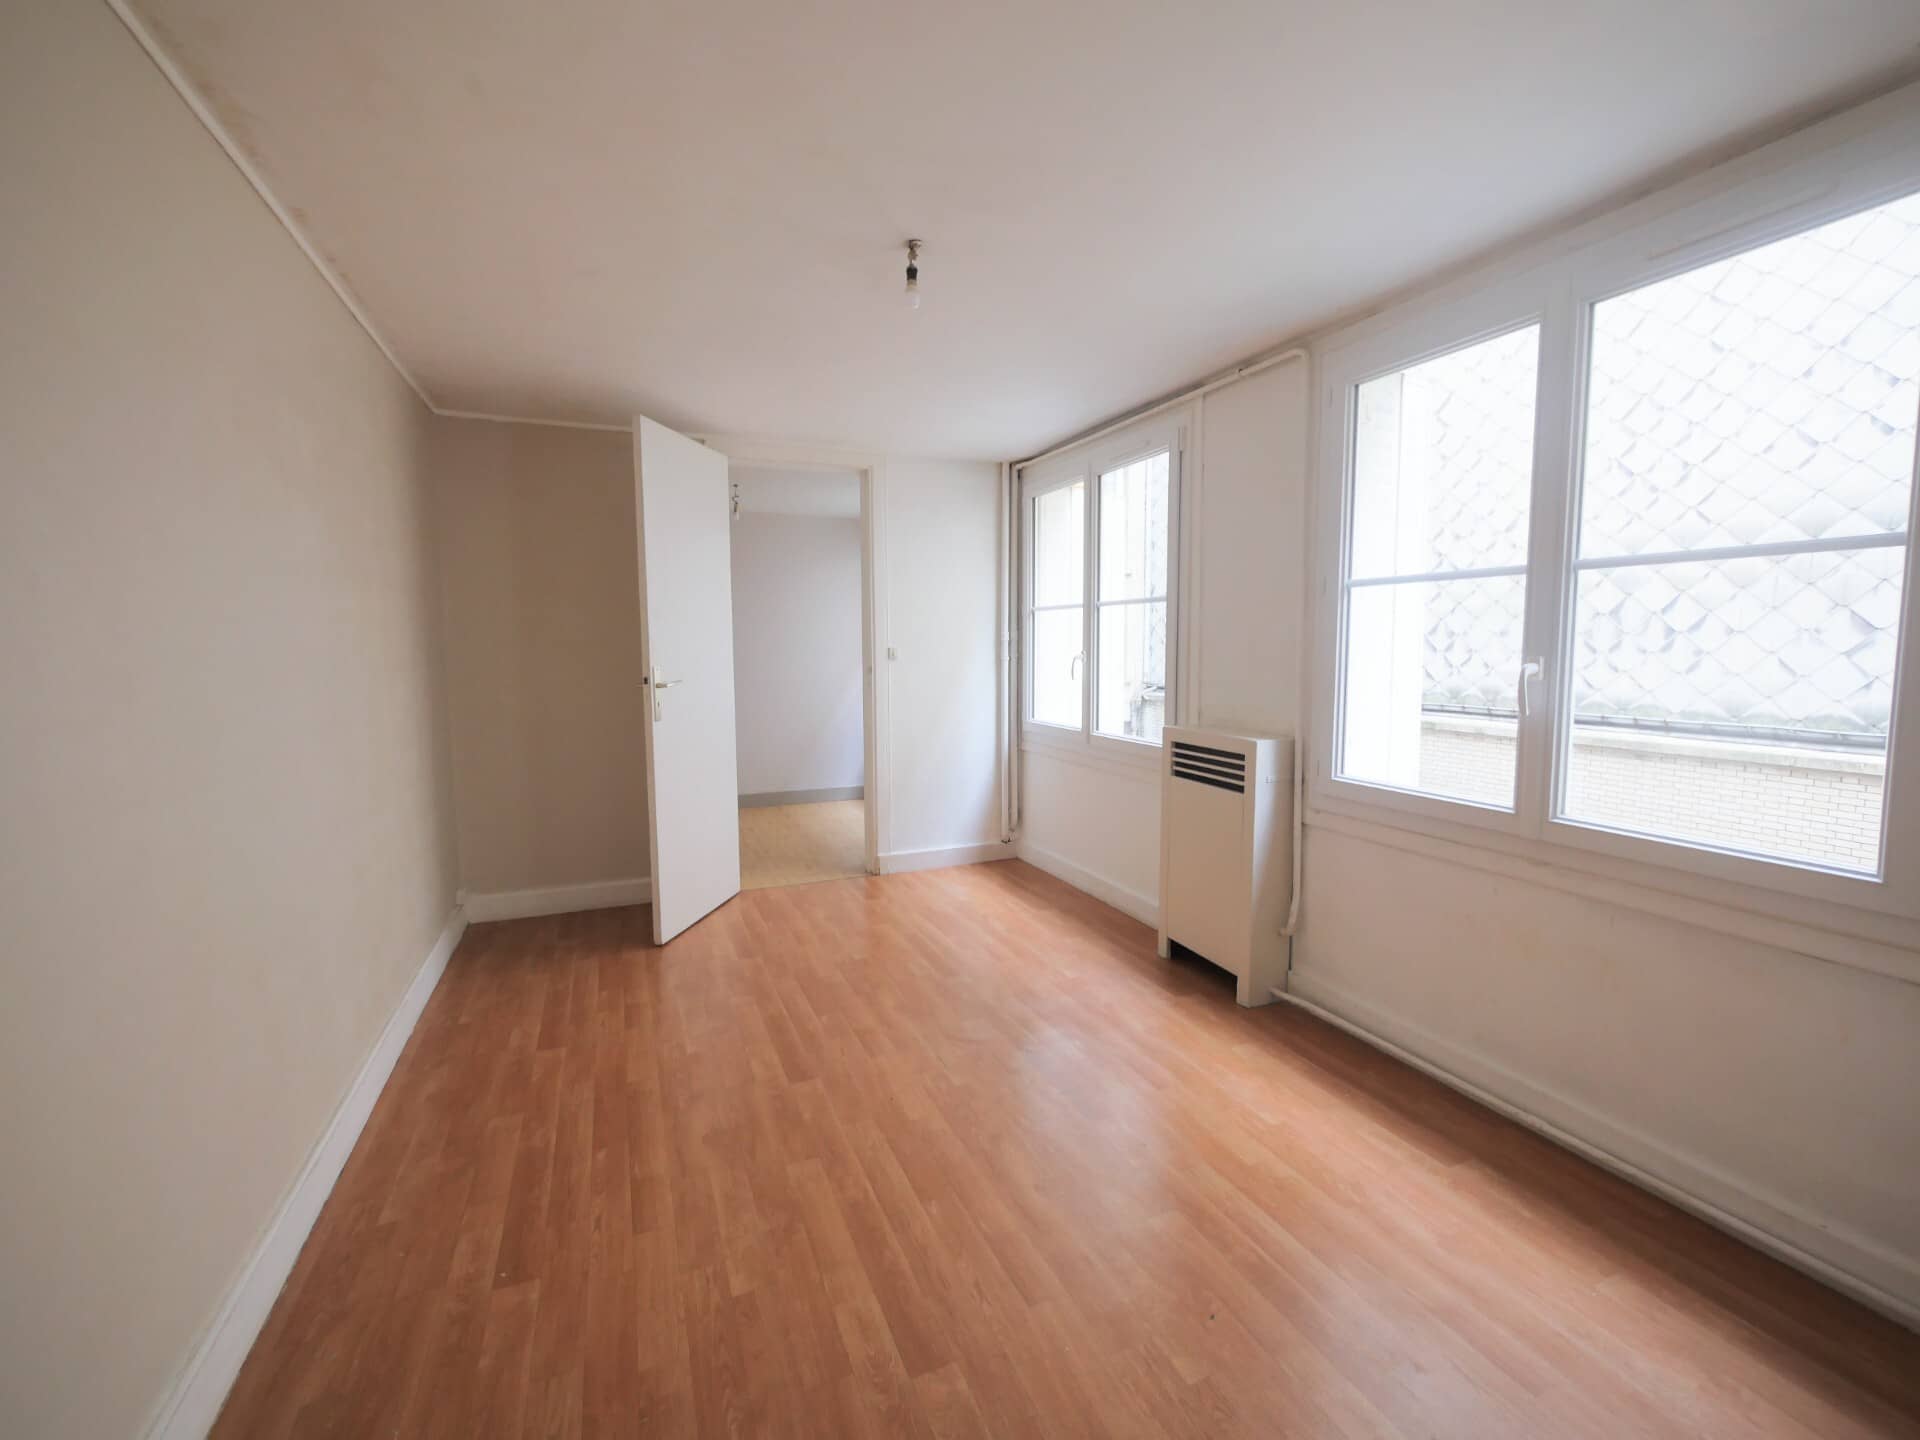 Annonce immobilière en location Appartement type F2 Le Havre 2078-1